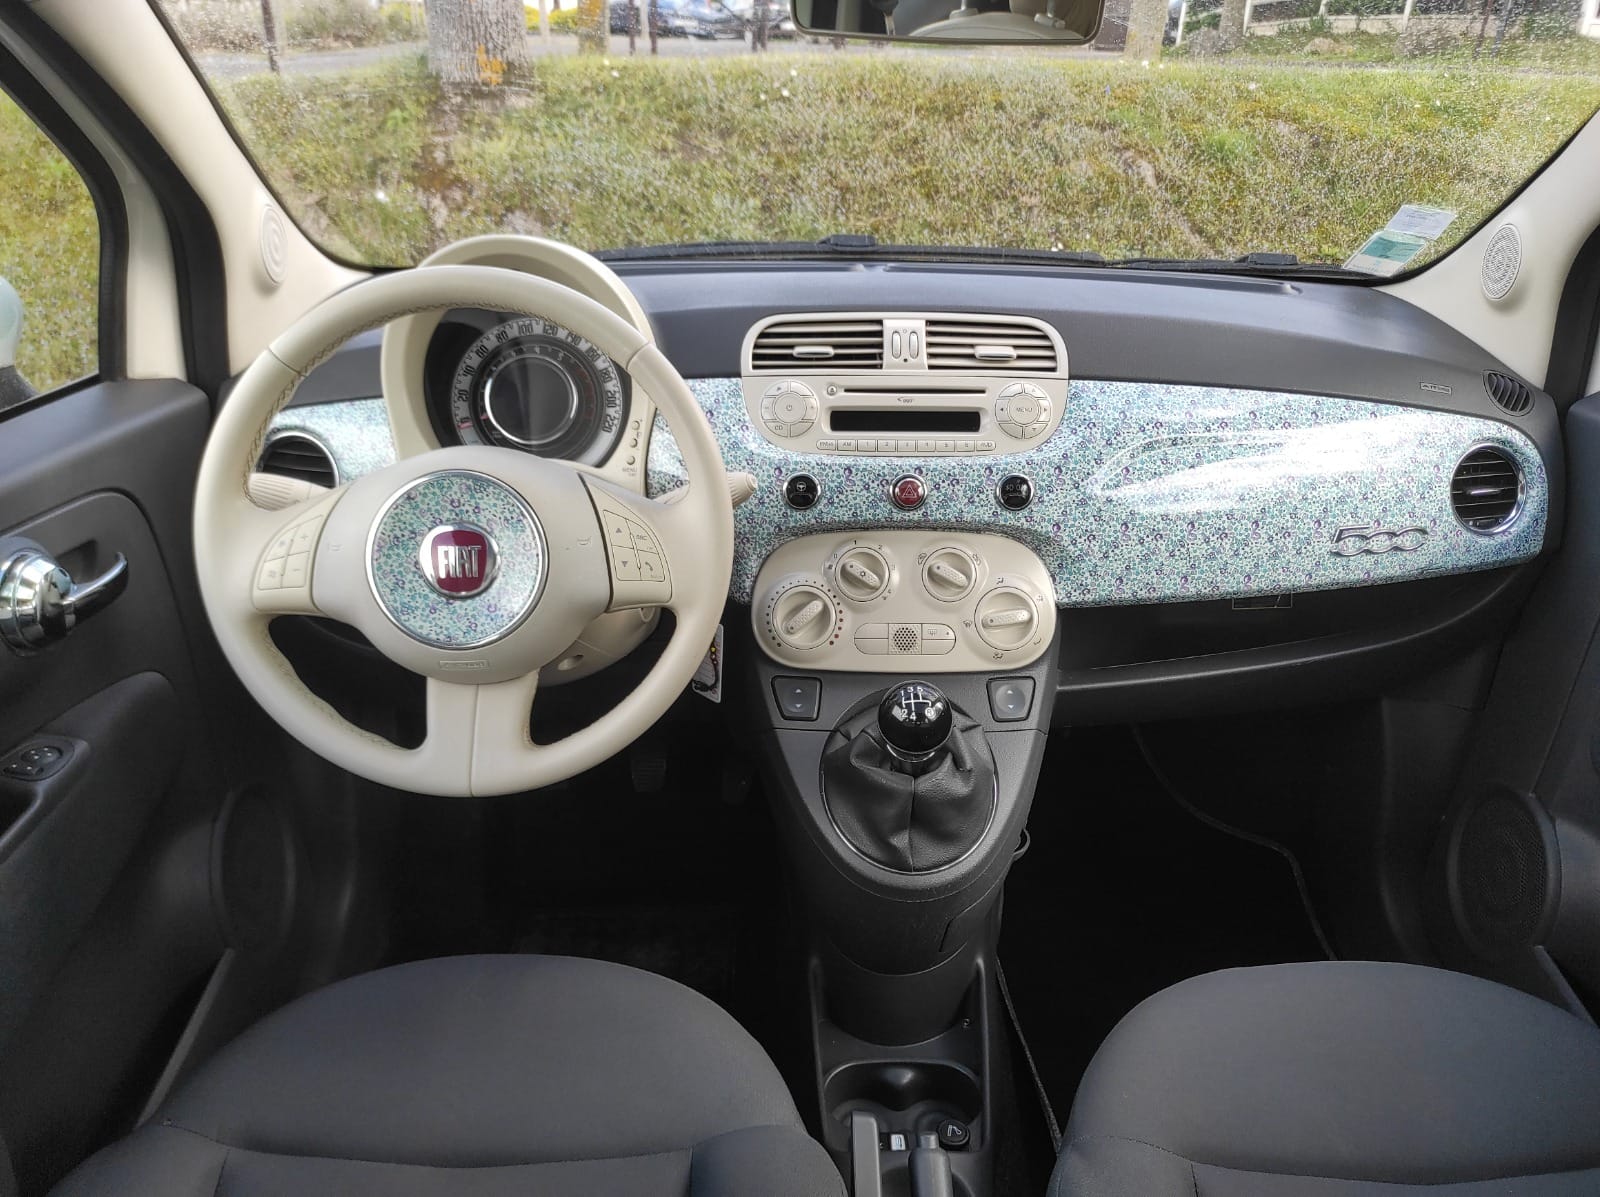 Fiat 500 2012 1.2 8V 69ch Liberty & Art fabrics - Automatix Motors - Voiture Occasion - Achat Voiture - Vente Voiture - Reprise Voiture